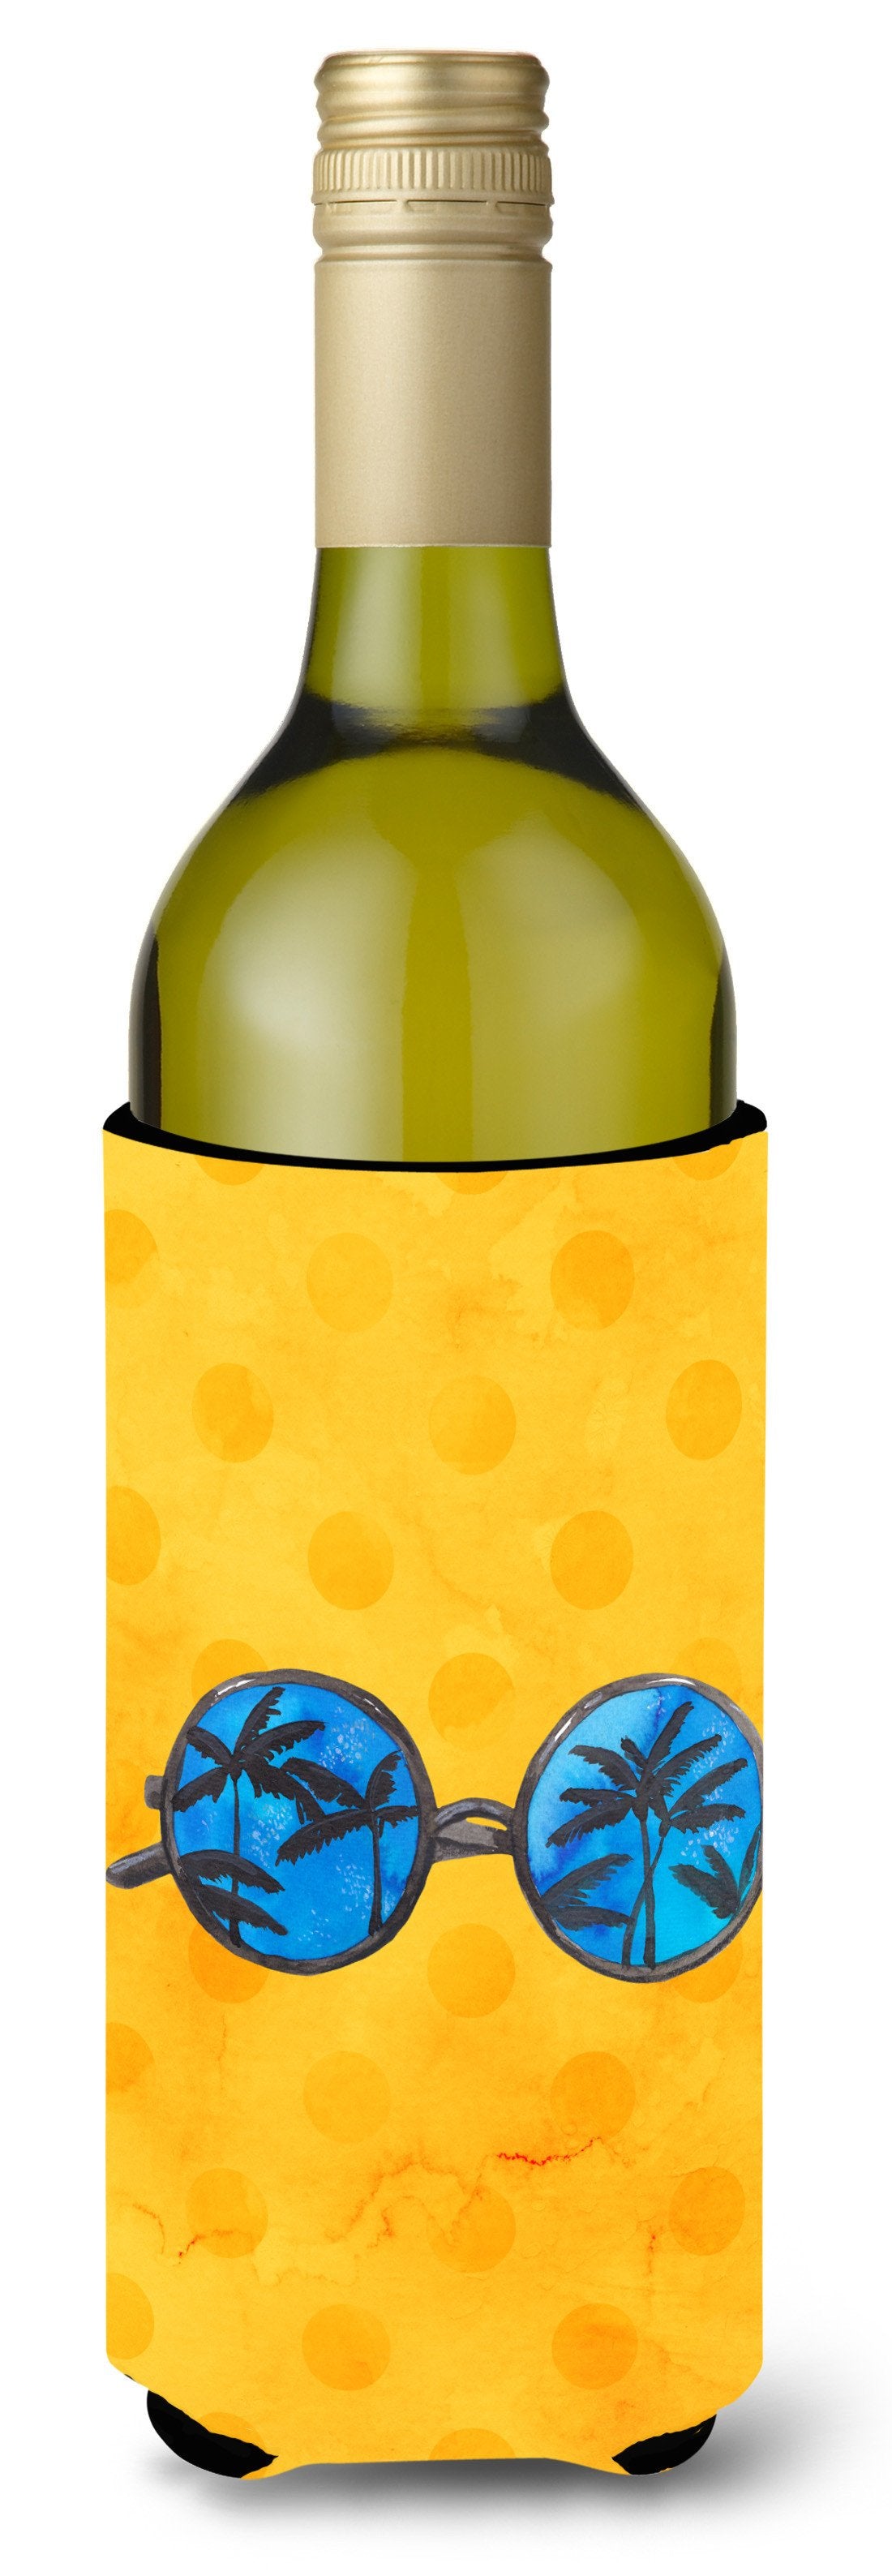 Sunglasses Yellow Polkadot Wine Bottle Beverge Insulator Hugger BB8177LITERK by Caroline's Treasures